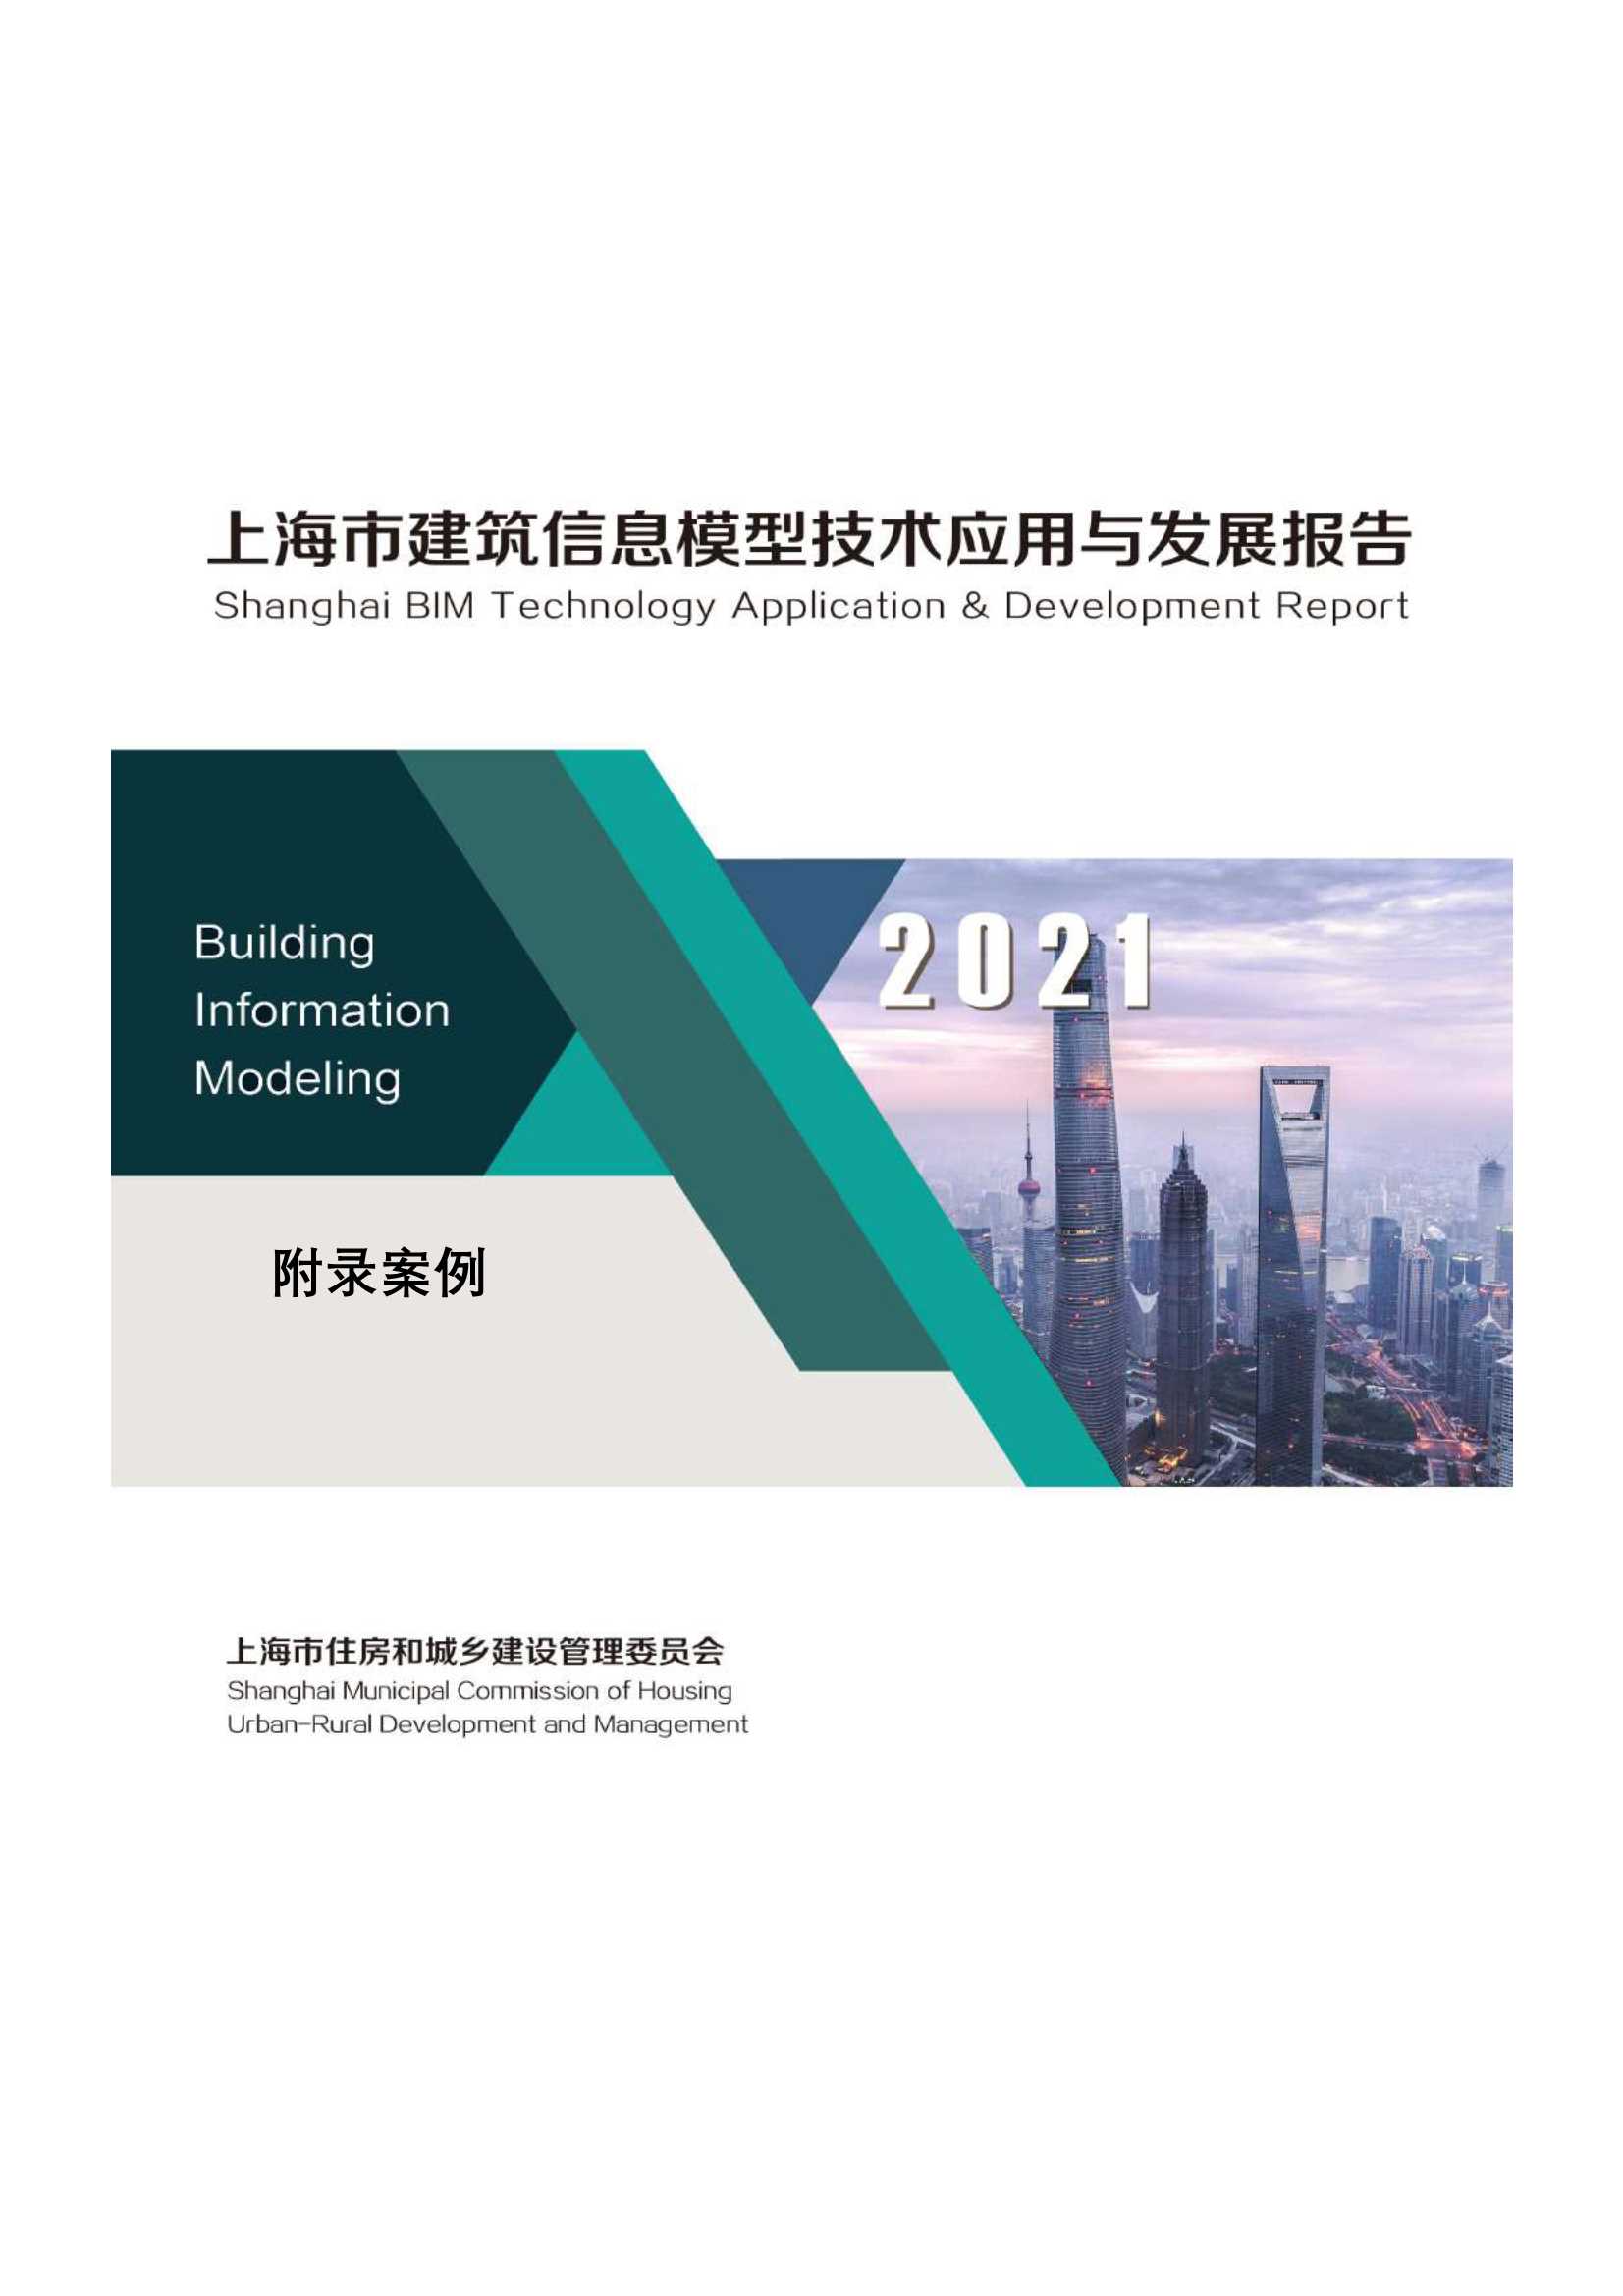 2021上海市BIM技术应用与发展报告-2021.09-138页